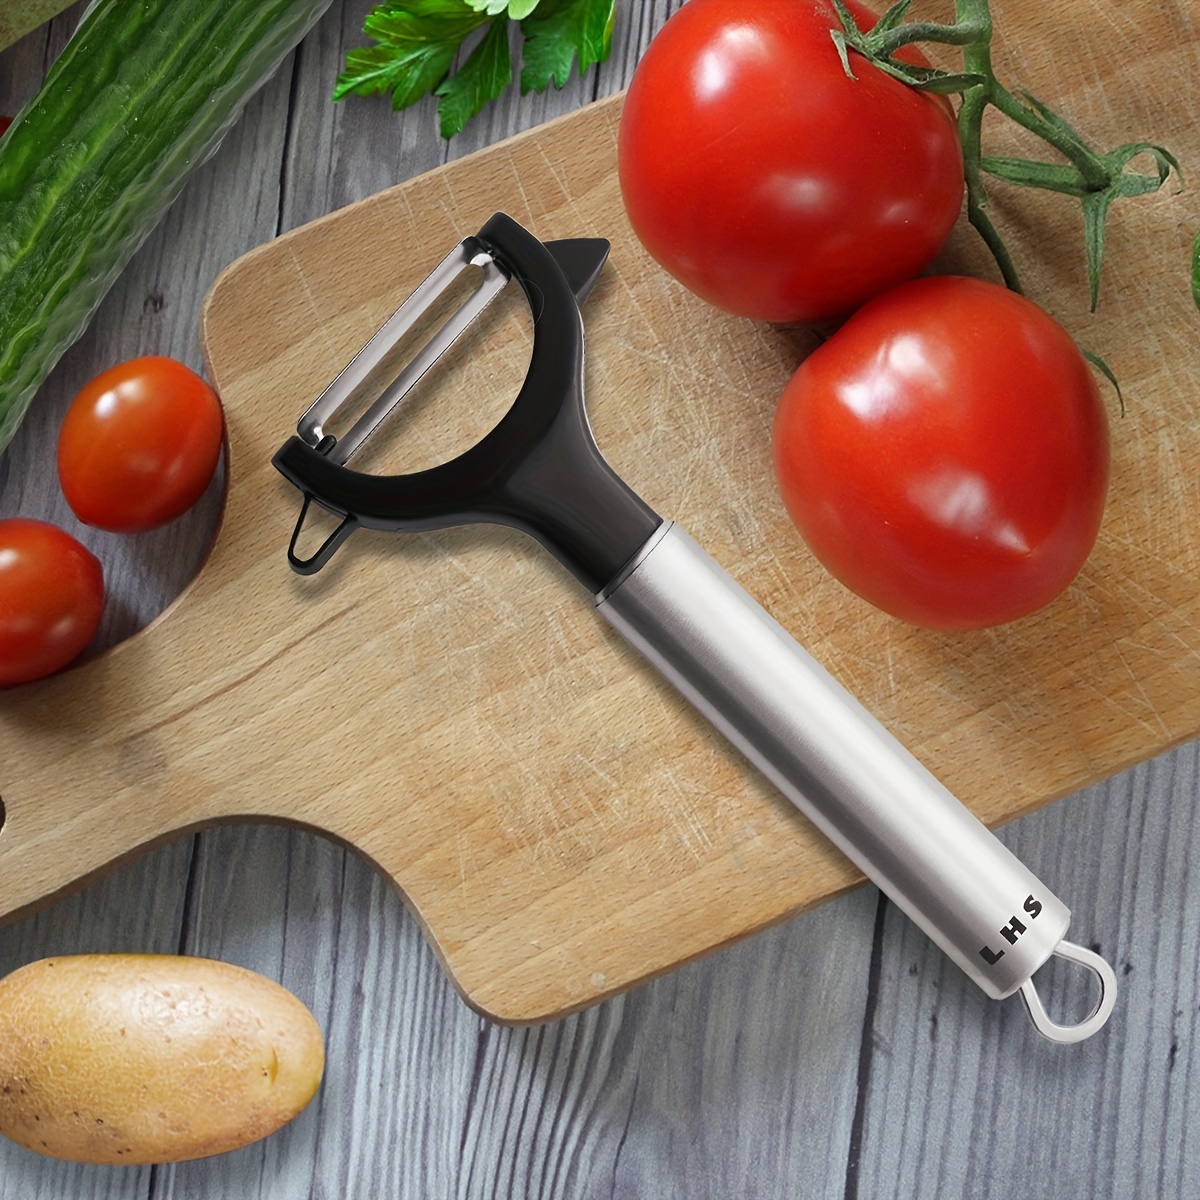 Ultra Sharp Stainless Steel Vegetable Peeler For Potatoes, All Fruits &  Veggies